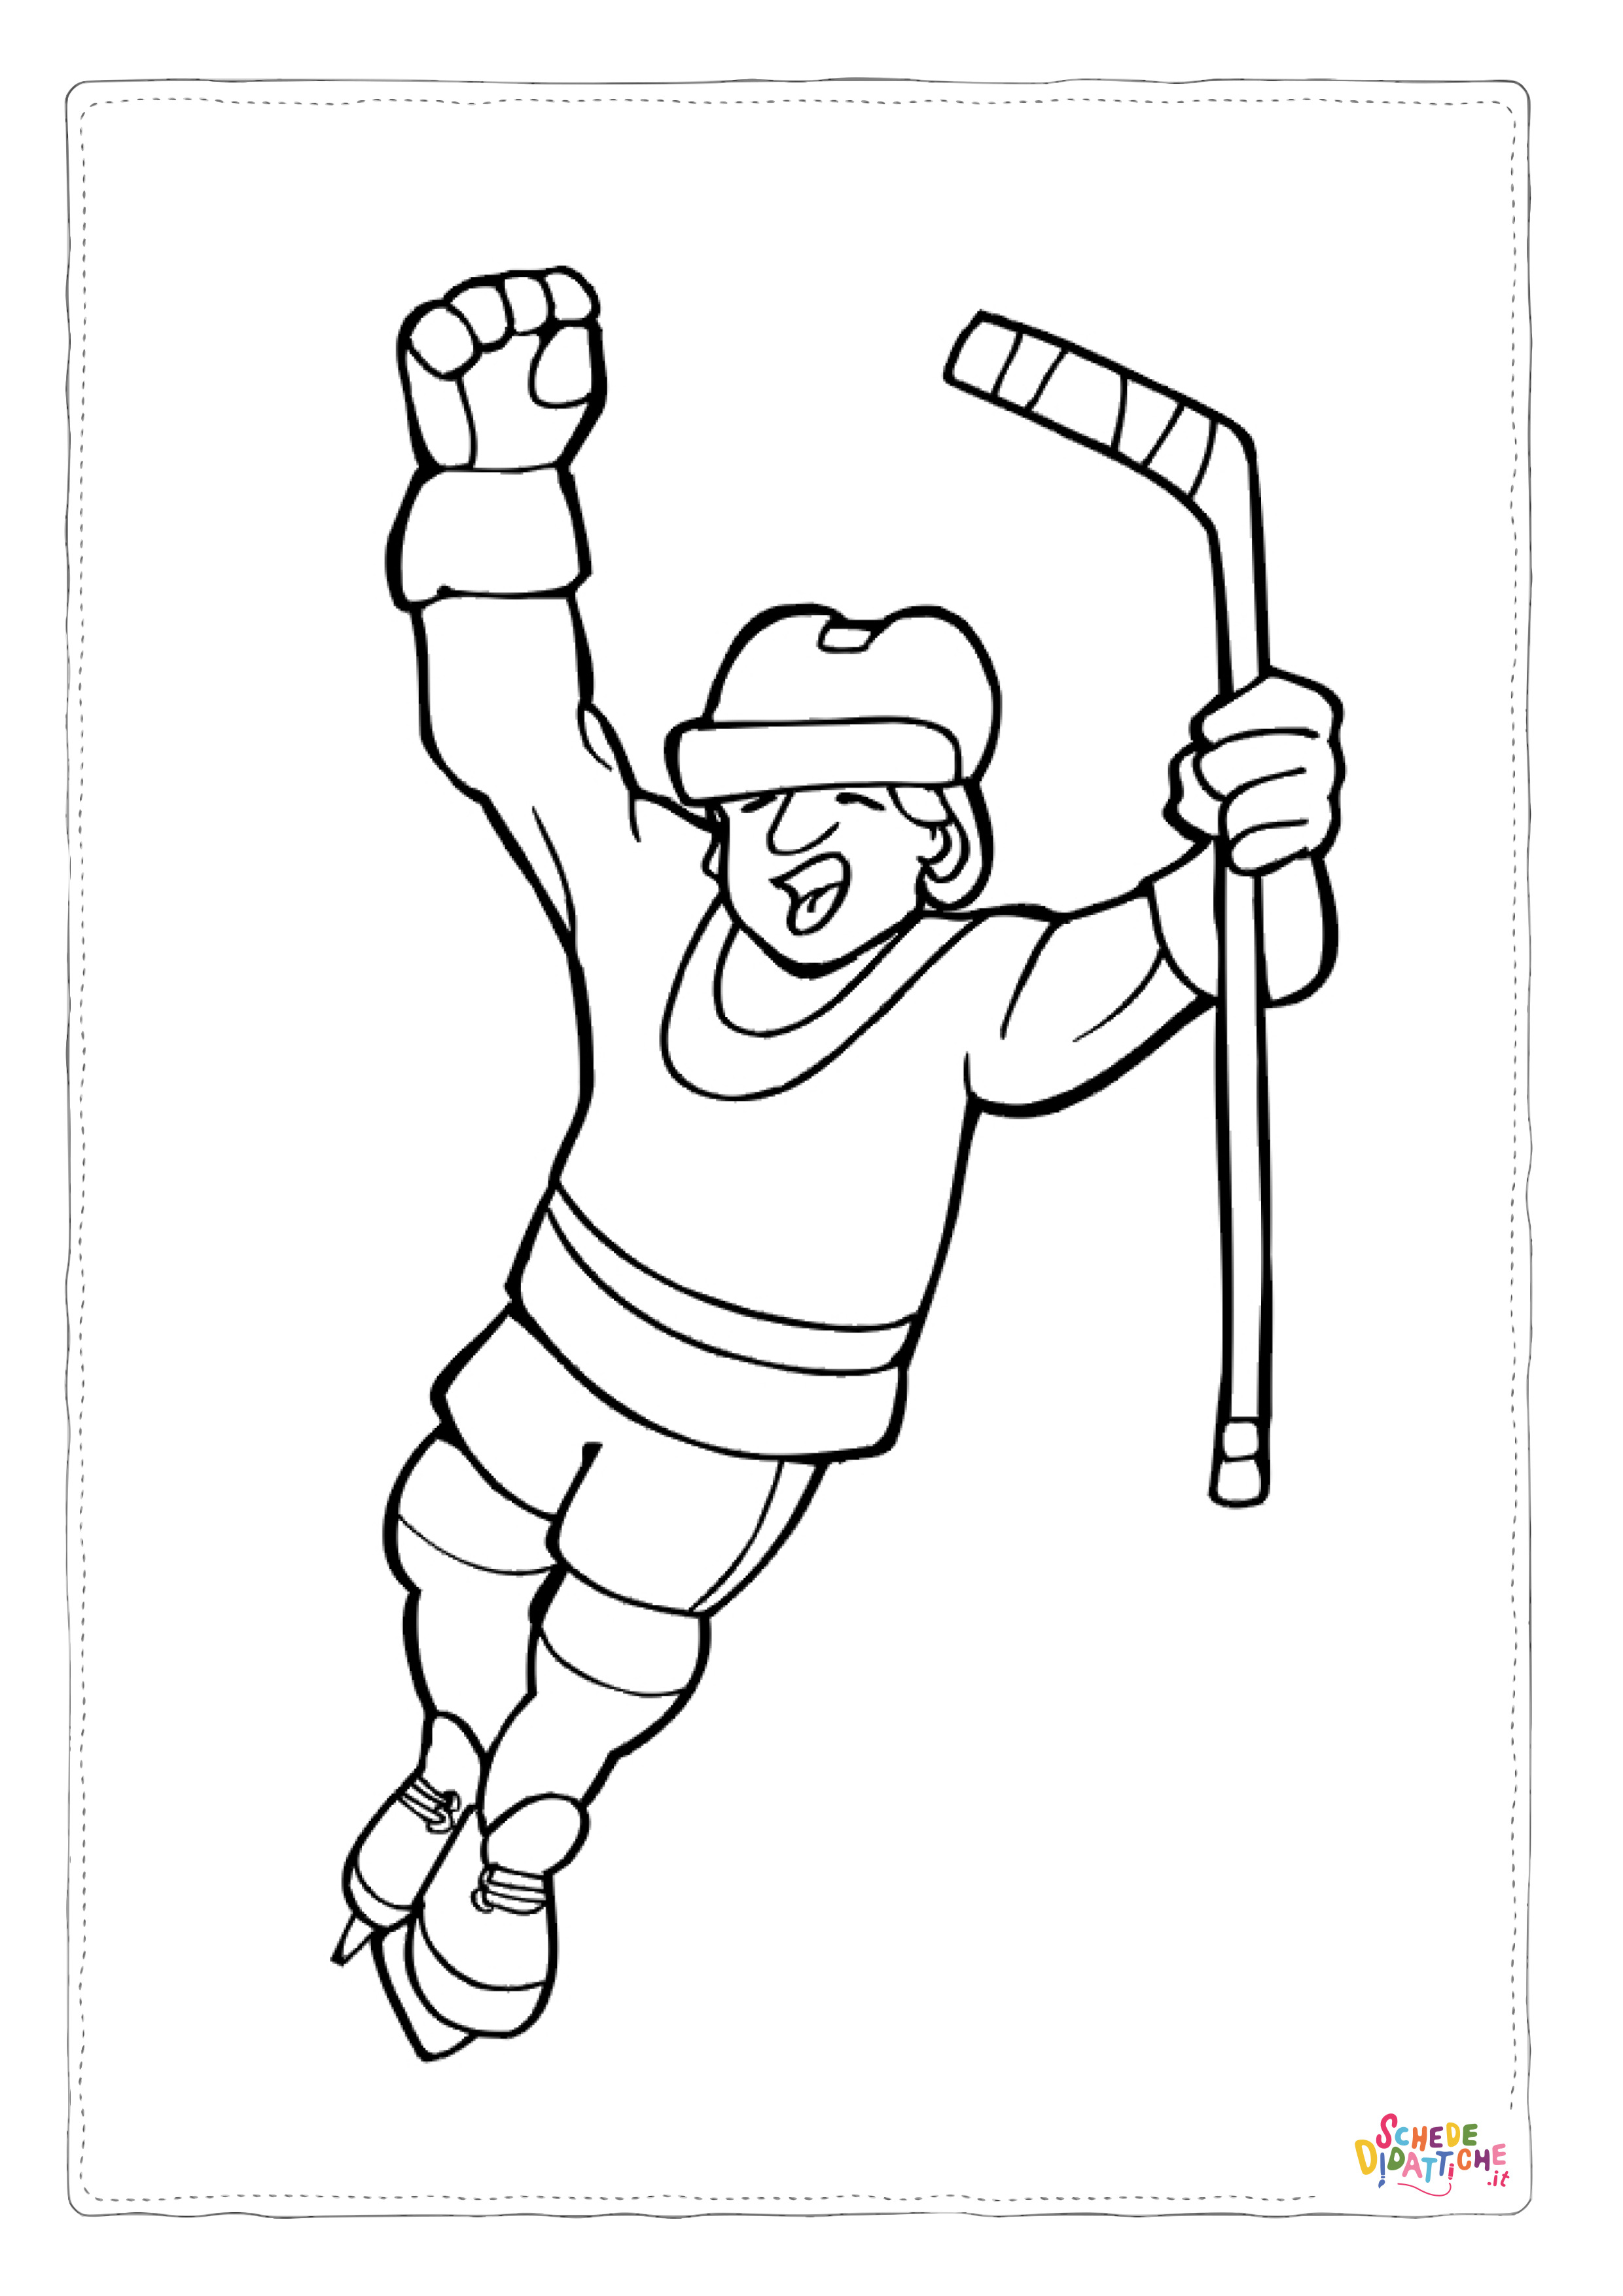 Disegno di hockey da stampare e colorare 18